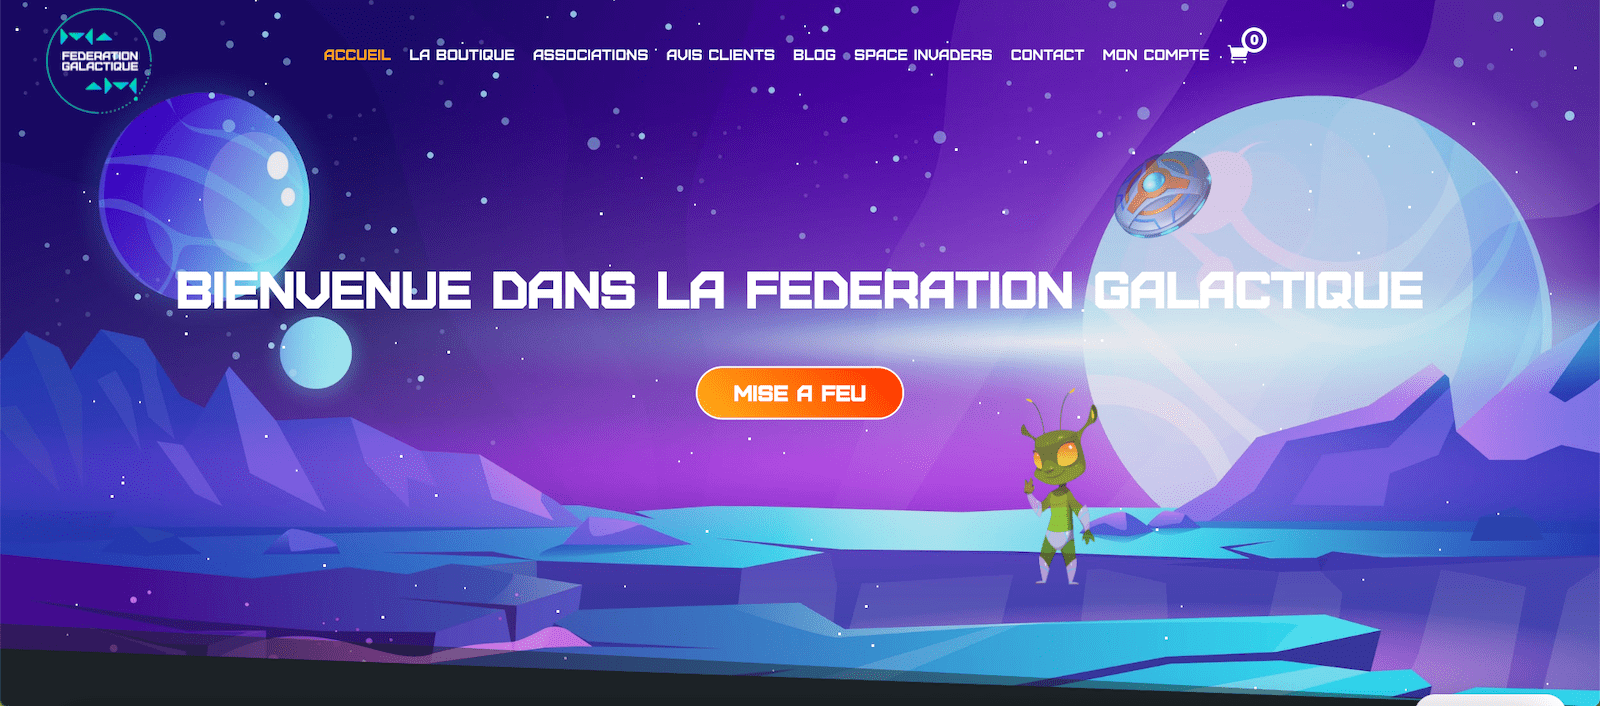 Site Fédération Galactique